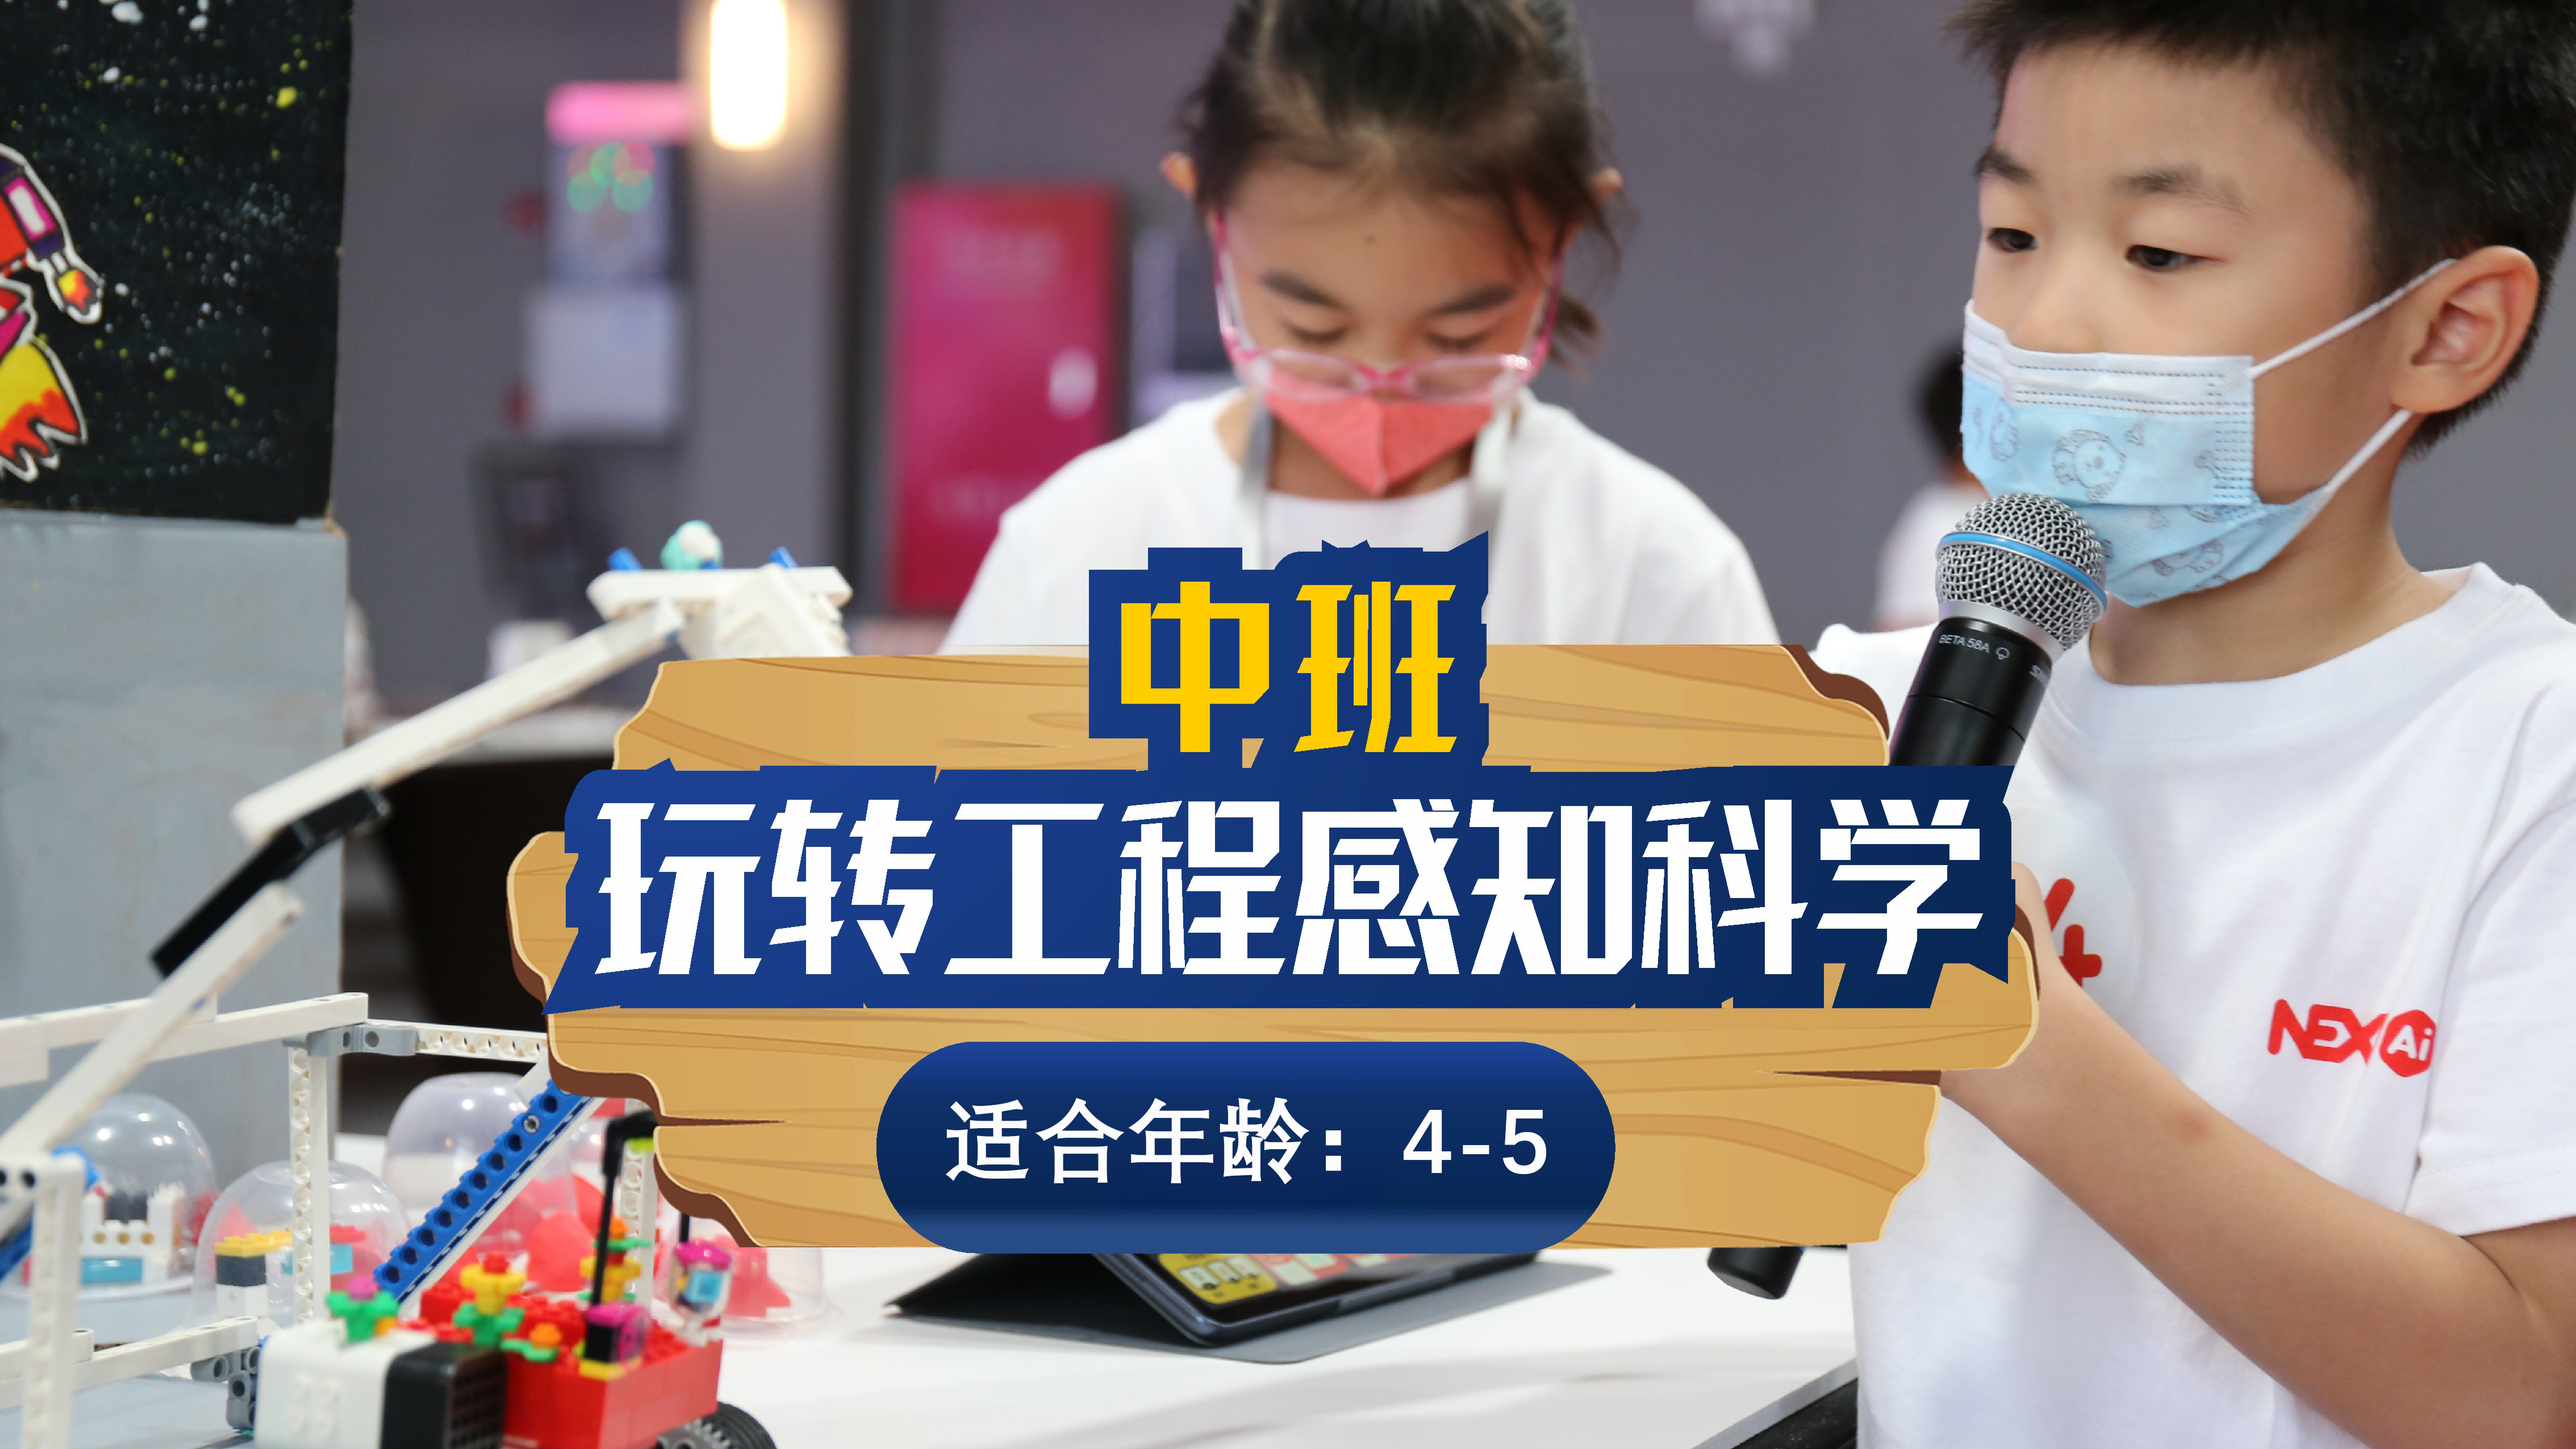 上海斯坦星球科创编程[4-5岁]玩转工程感知科学课图片